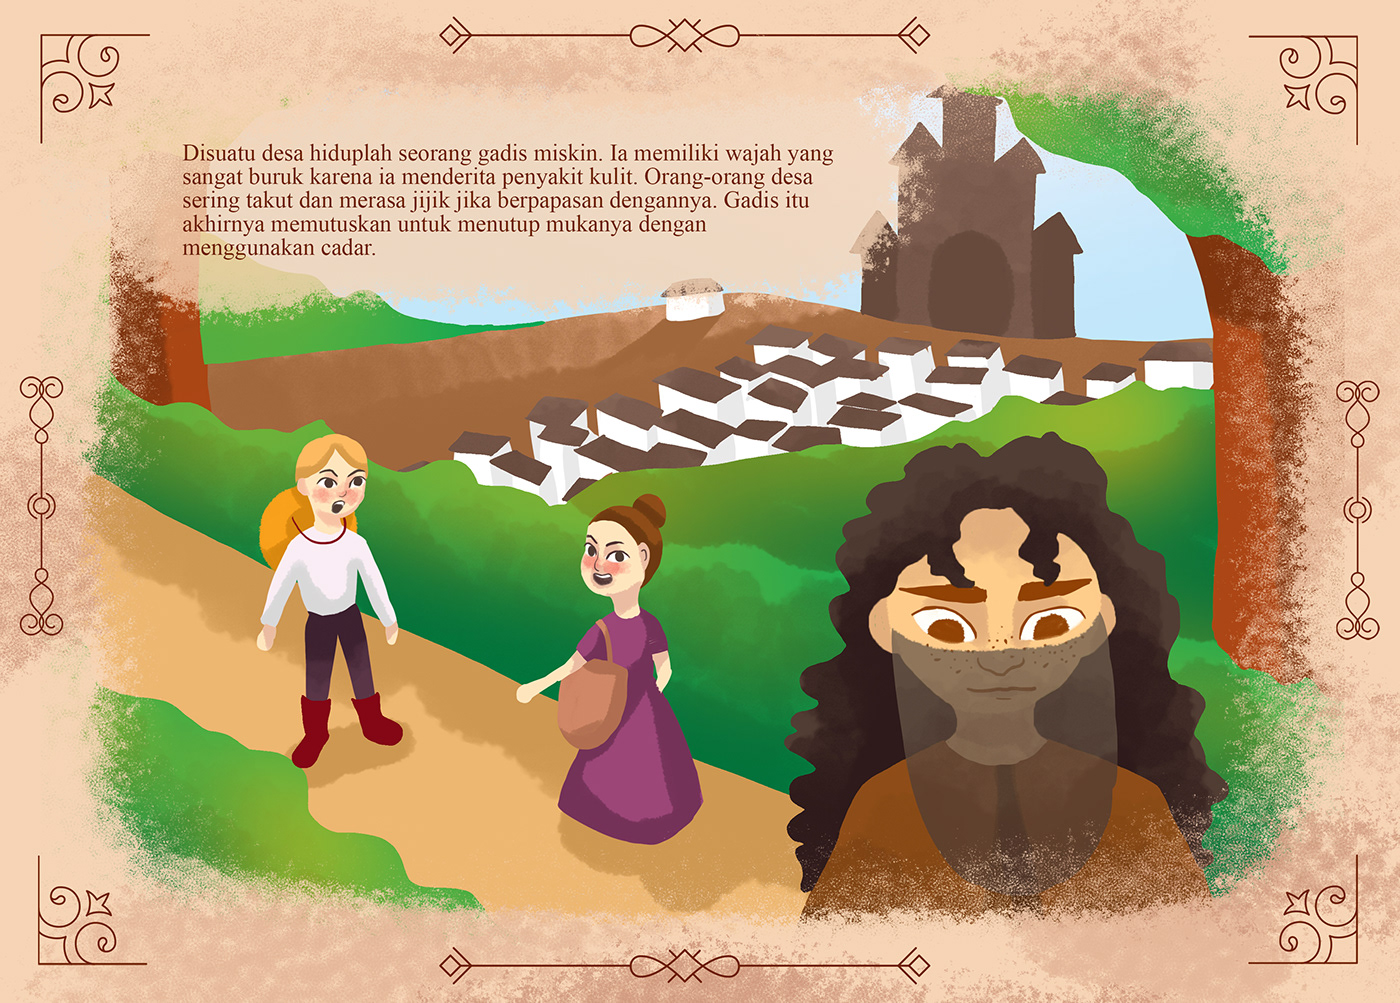 chararter design children design fairytale Folklore ILLUSTRATION  illustration book story